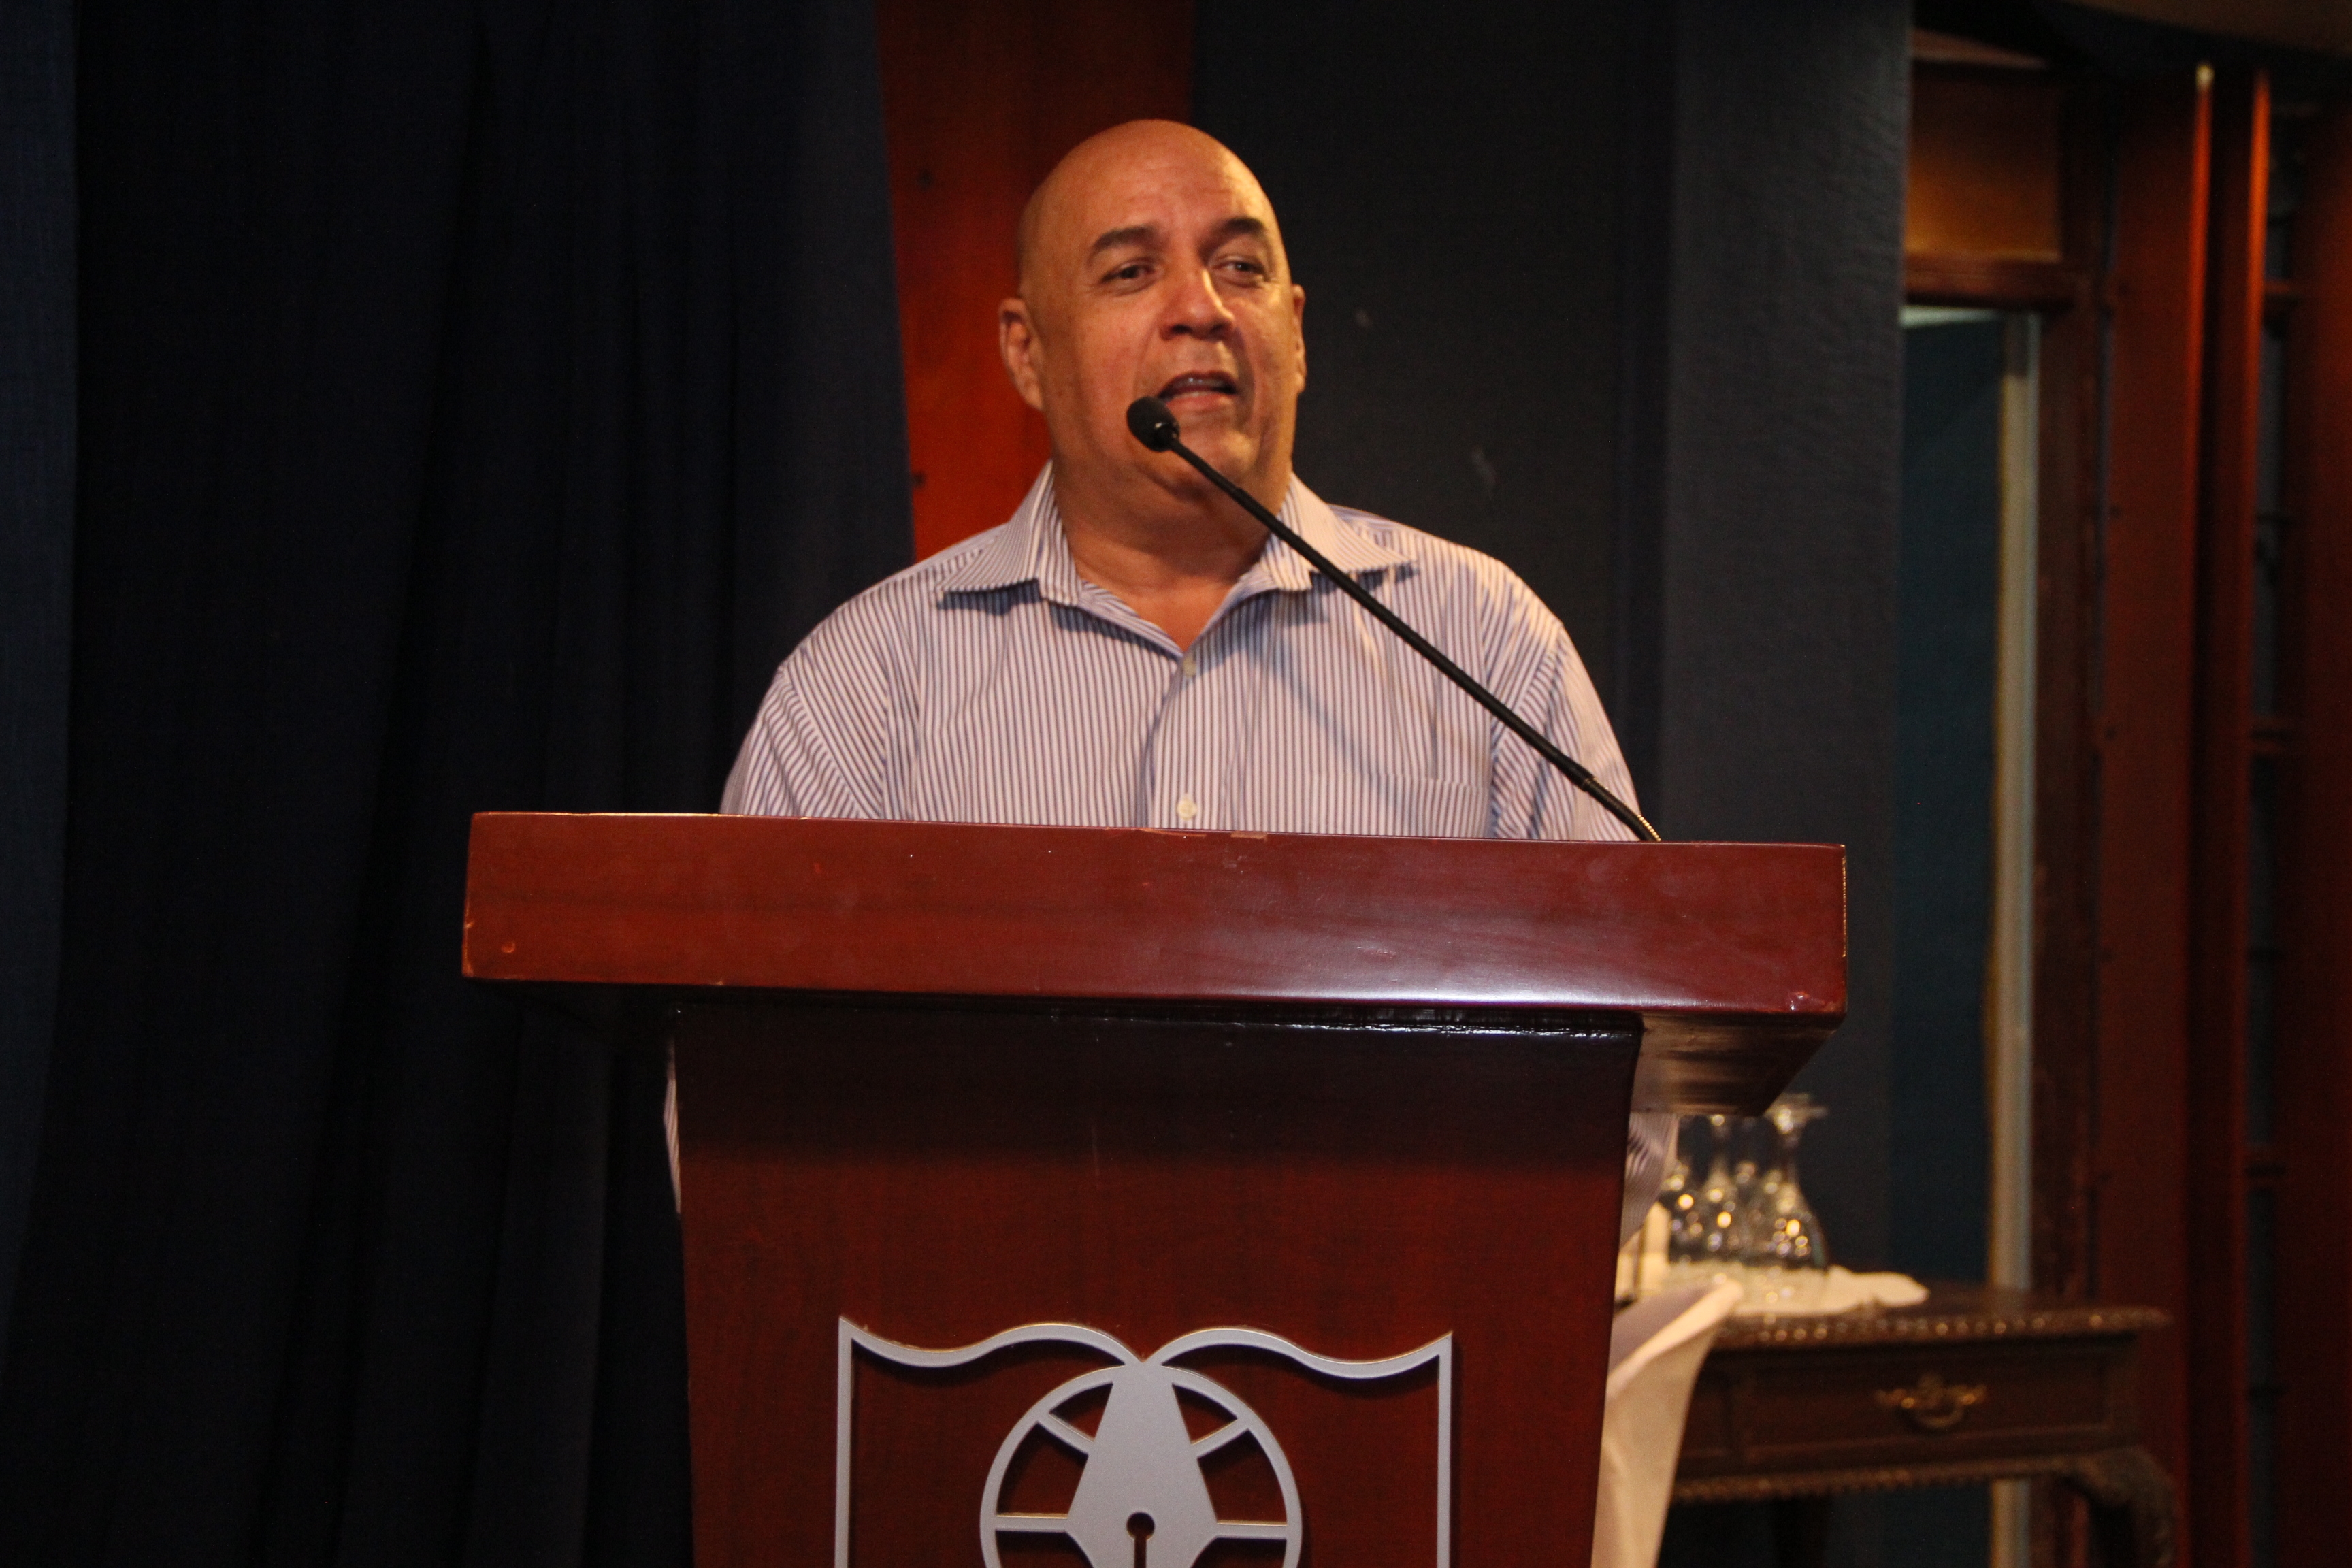 Lic. José Arias, Director de Deportes de la Universidad Tecnológica de Santiago (UTESA)